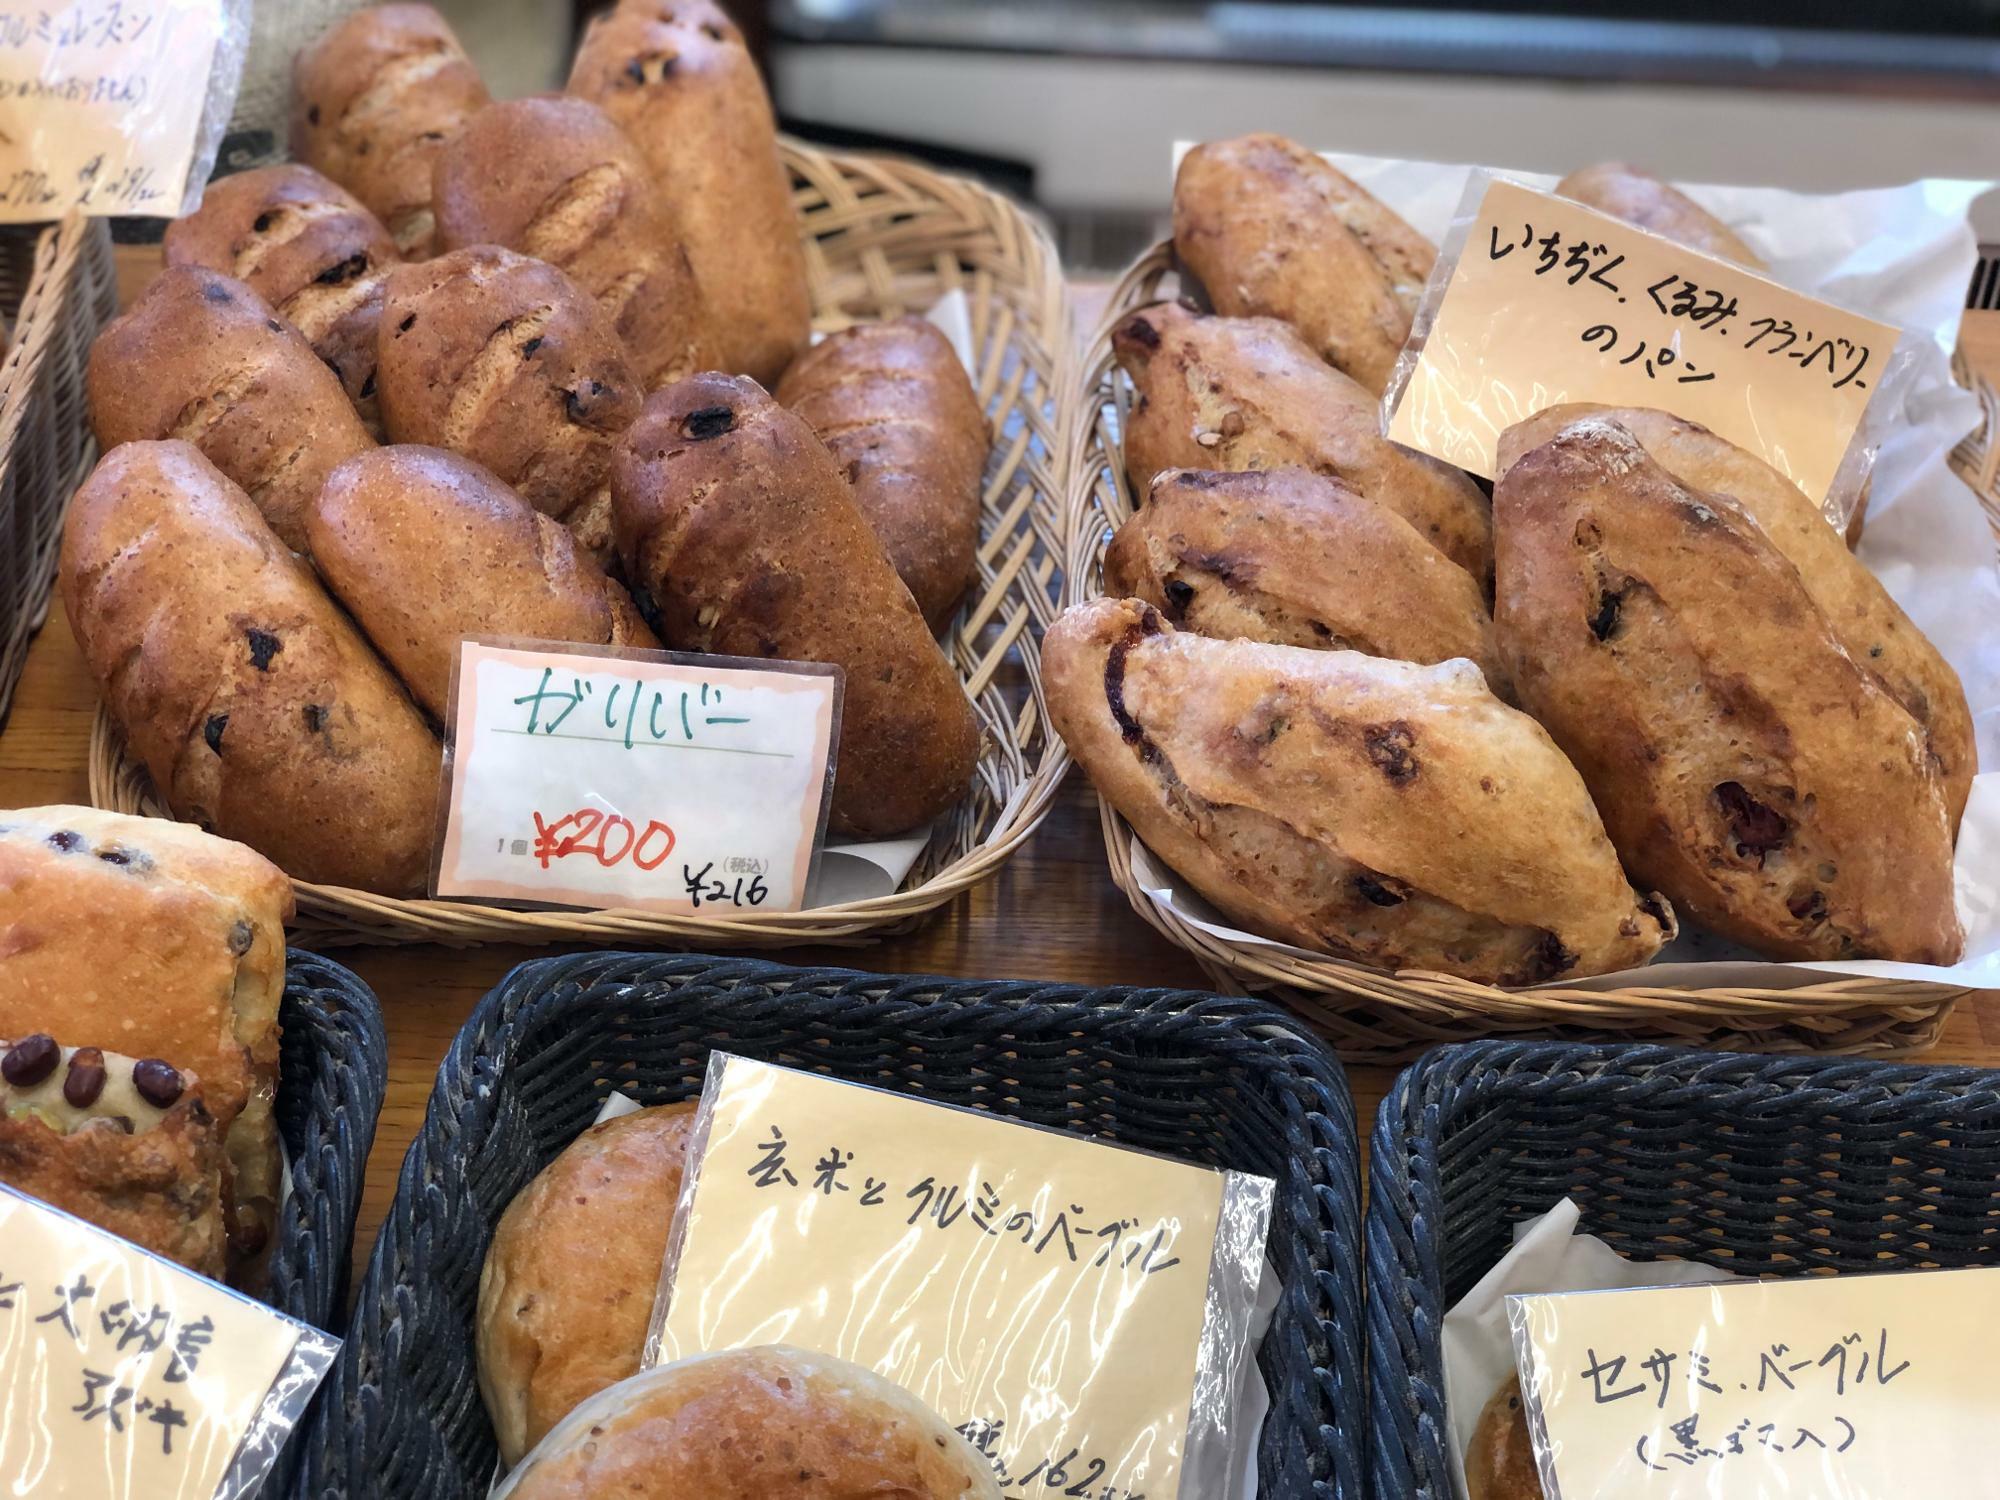 ハード系のパンも人気があります。